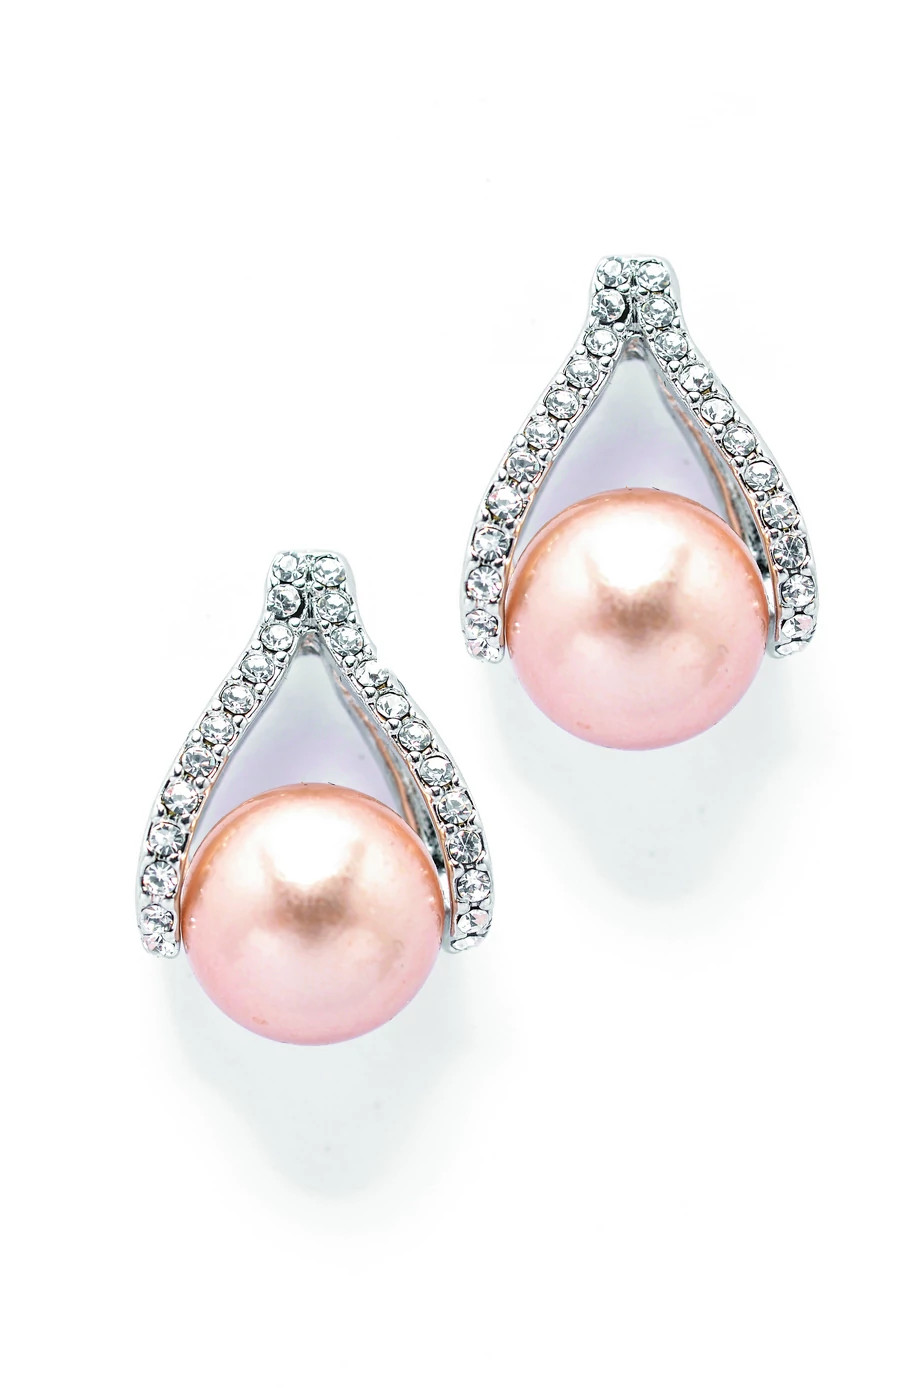 Odpowiednio noszona biżuteria, np. klasyczne perły, to w biznesie synonim siły i sukcesu.